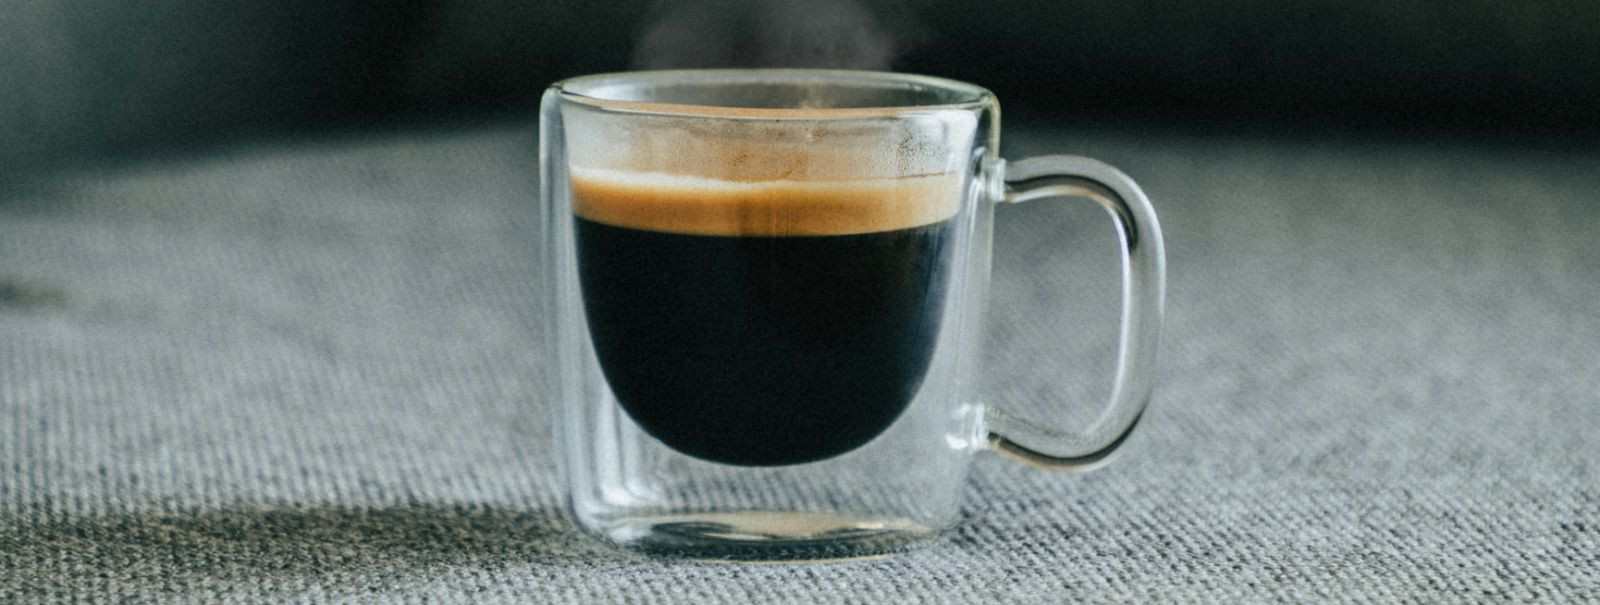 Espresso on enamat kui lihtsalt kohvijook; see on kunstivorm, mis nõuab täpsust, kannatlikkust ja kirge. Neile, kes soovivad kodus jäljendada oma lemmikkohviku